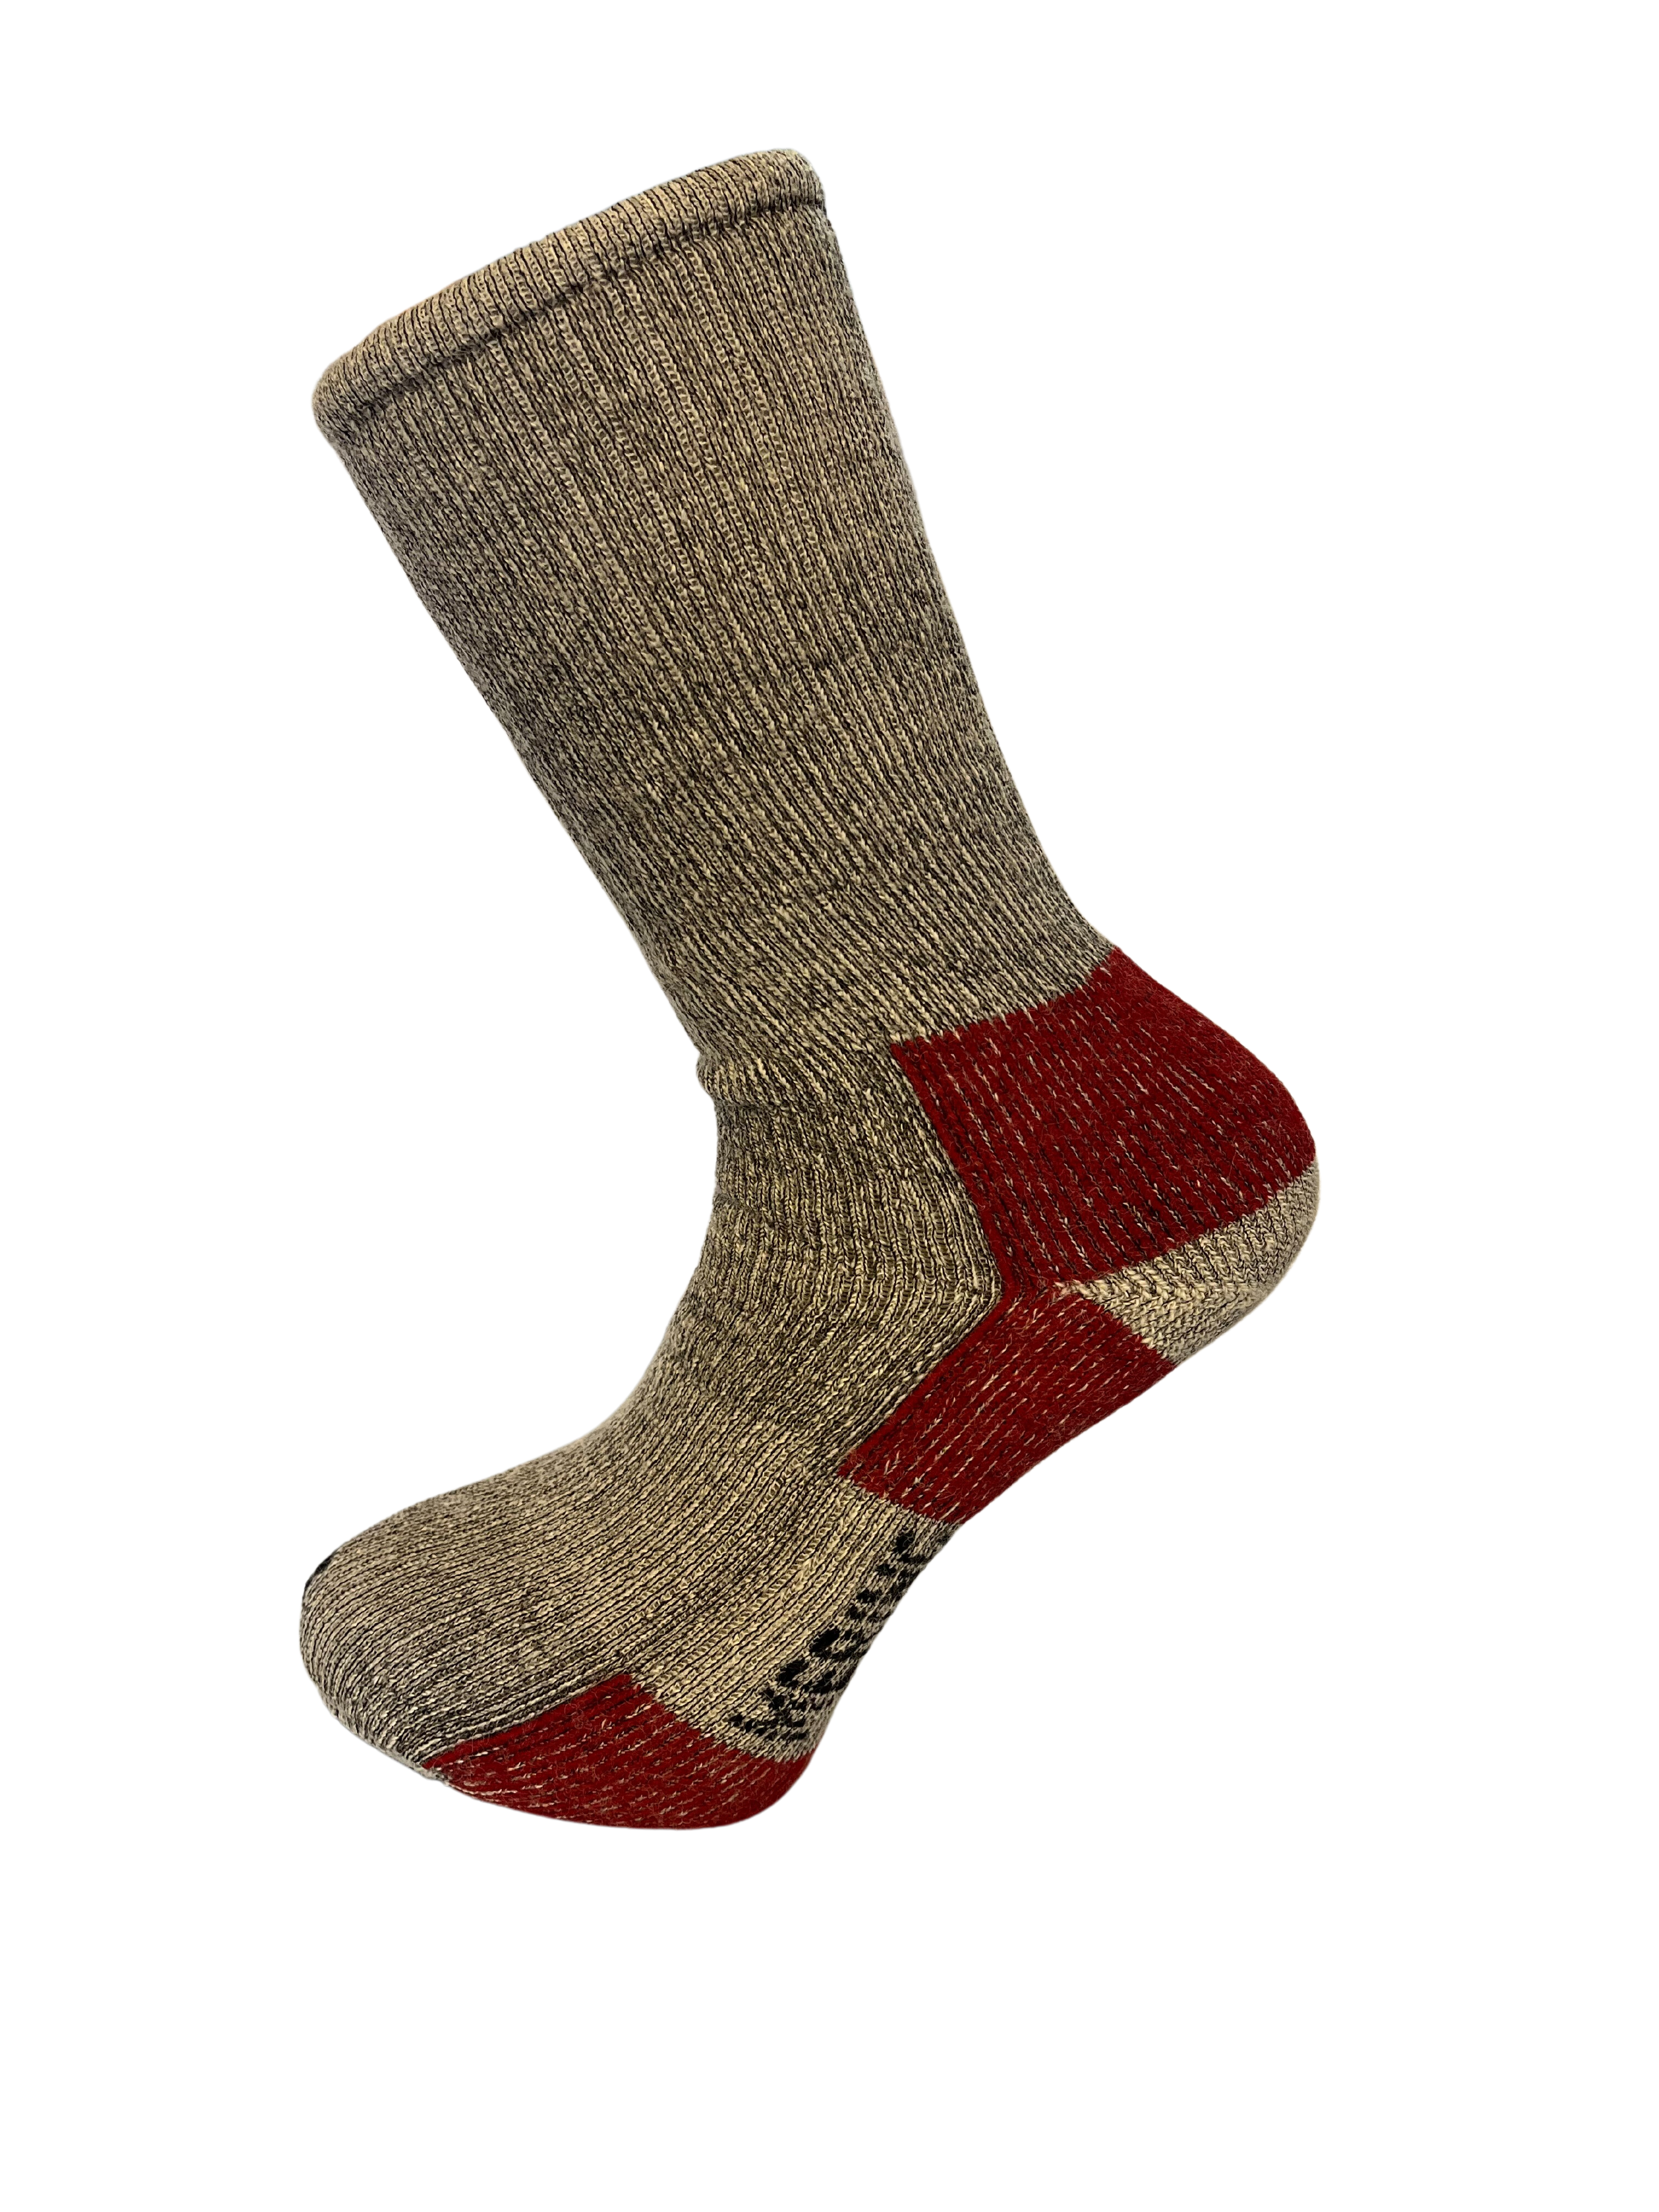 attribut ophøre ild Trekking sokker ⇒ Køb sokker af 80% merinould hos Uldhuset